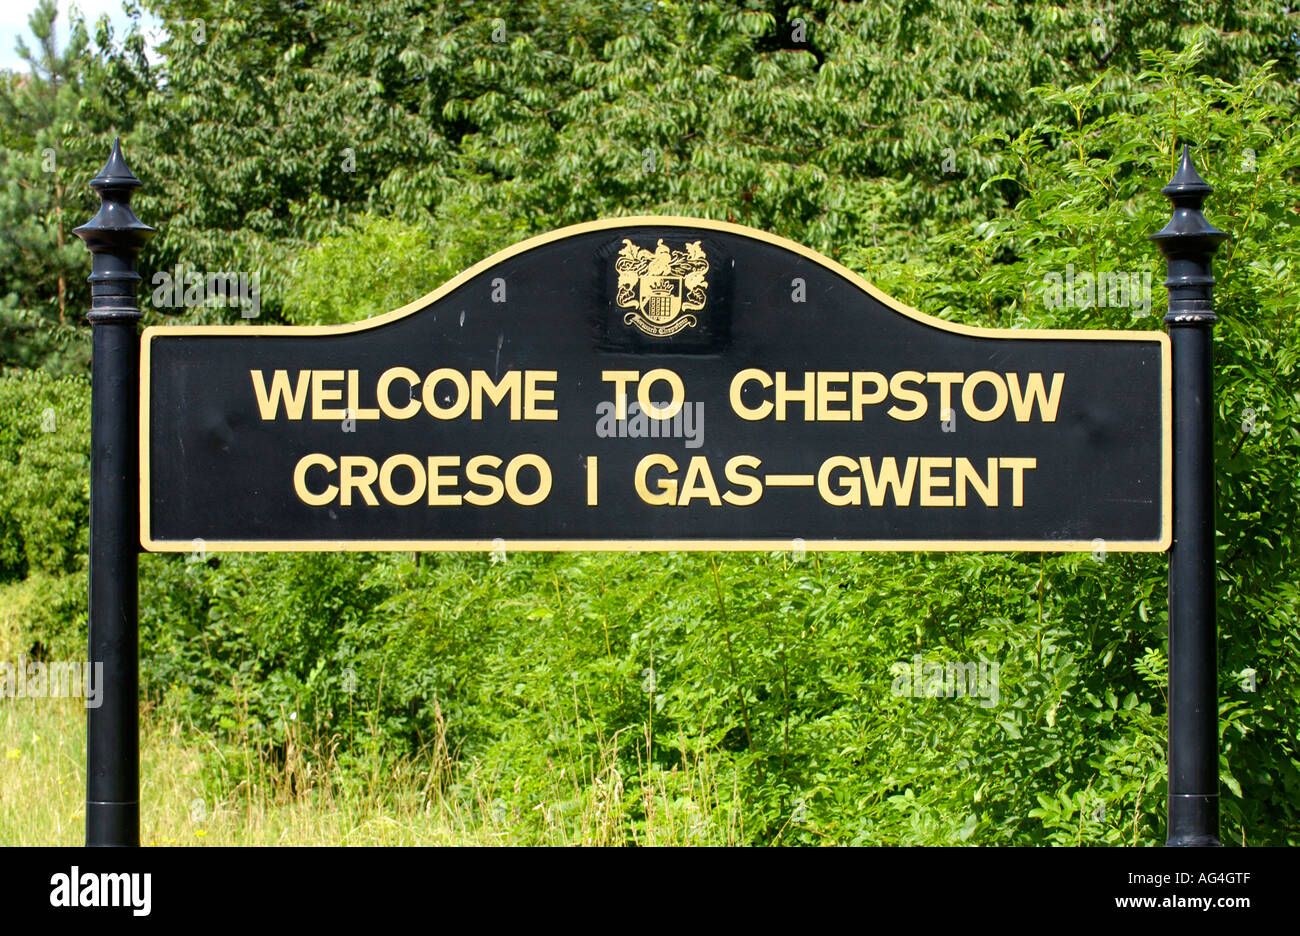 Zweisprachig Englisch-walisischen Sprache Willkommen zu CHEPSTOW am Straßenrand Zeichen außerhalb Chepstow Monmouthshire South East Wales UK Stockfoto